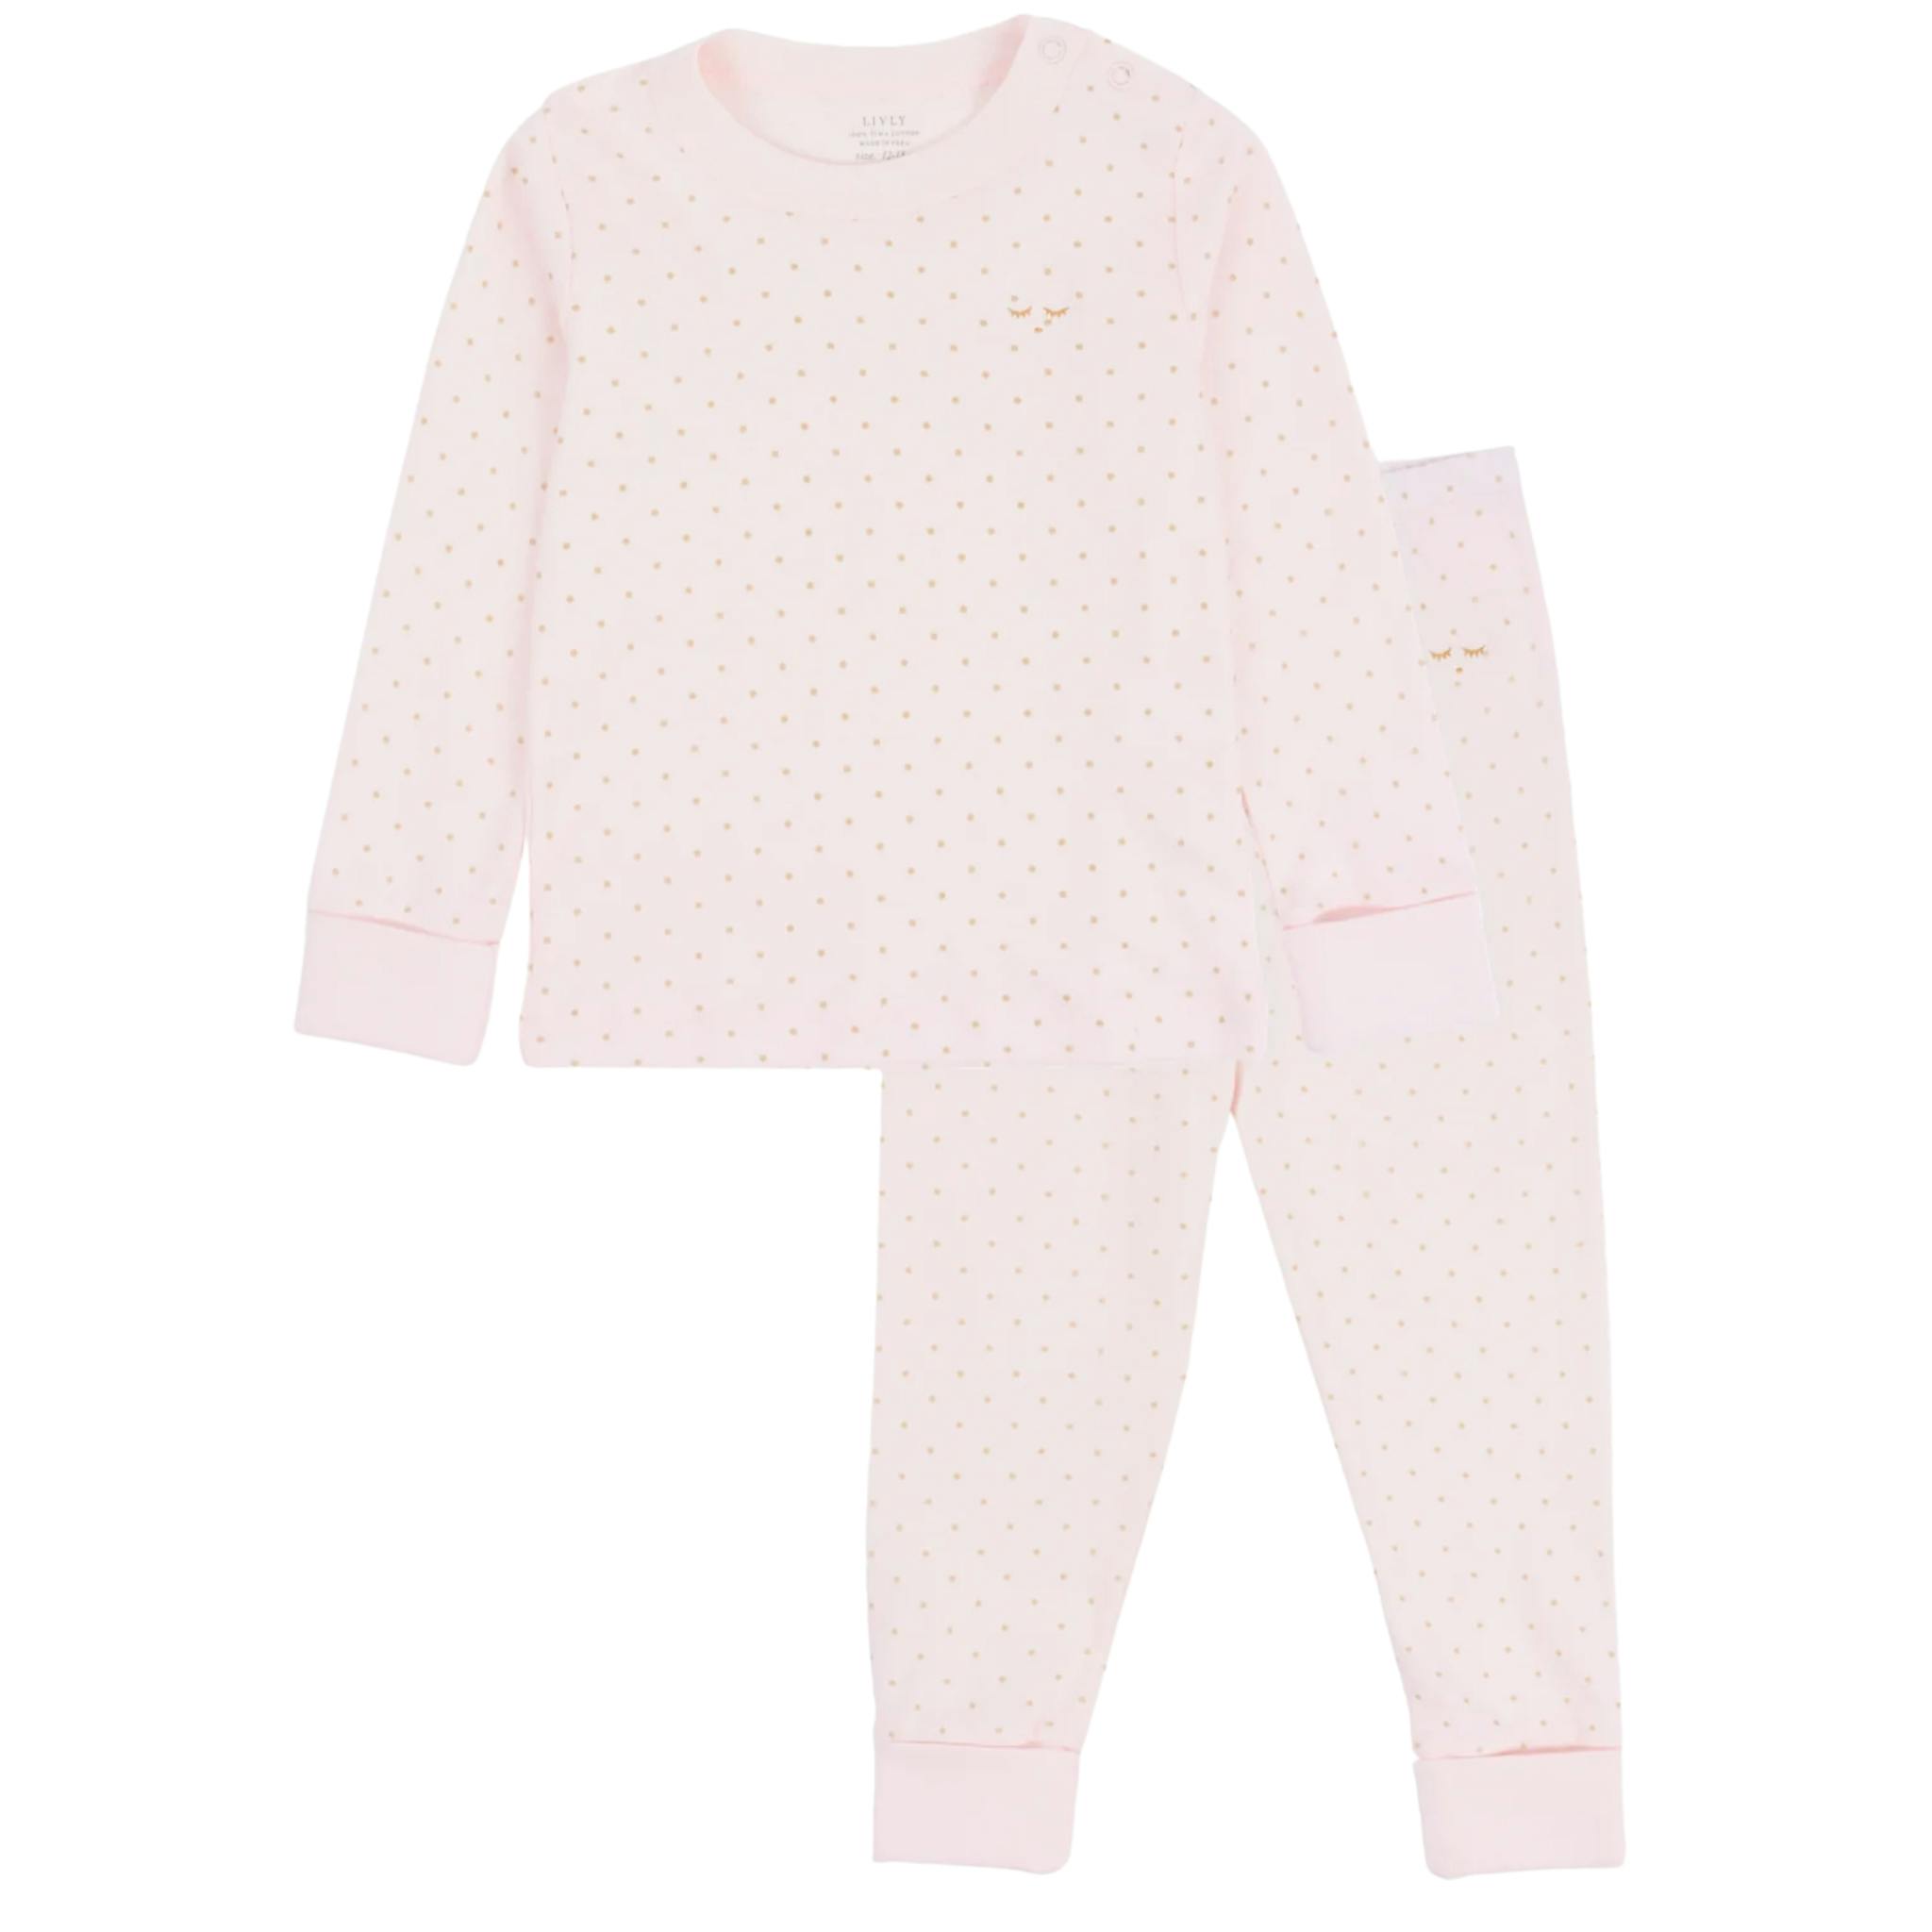 pyjamas från livly i rosa och guld saturday